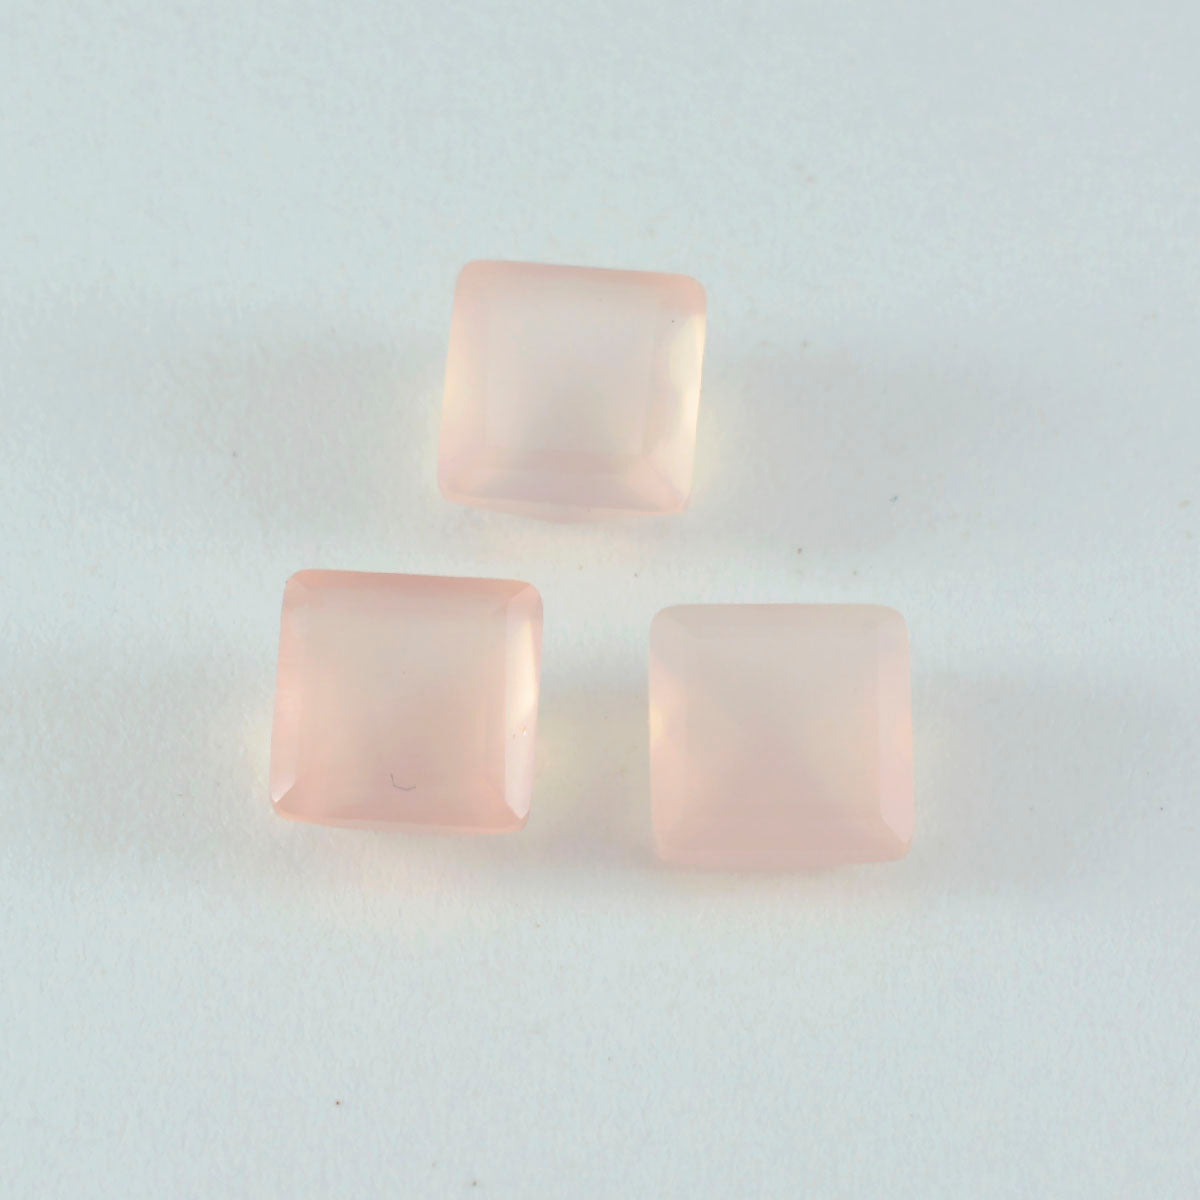 riyogems 1шт розовый кварц ограненный 14x14 мм квадратной формы драгоценный камень потрясающего качества